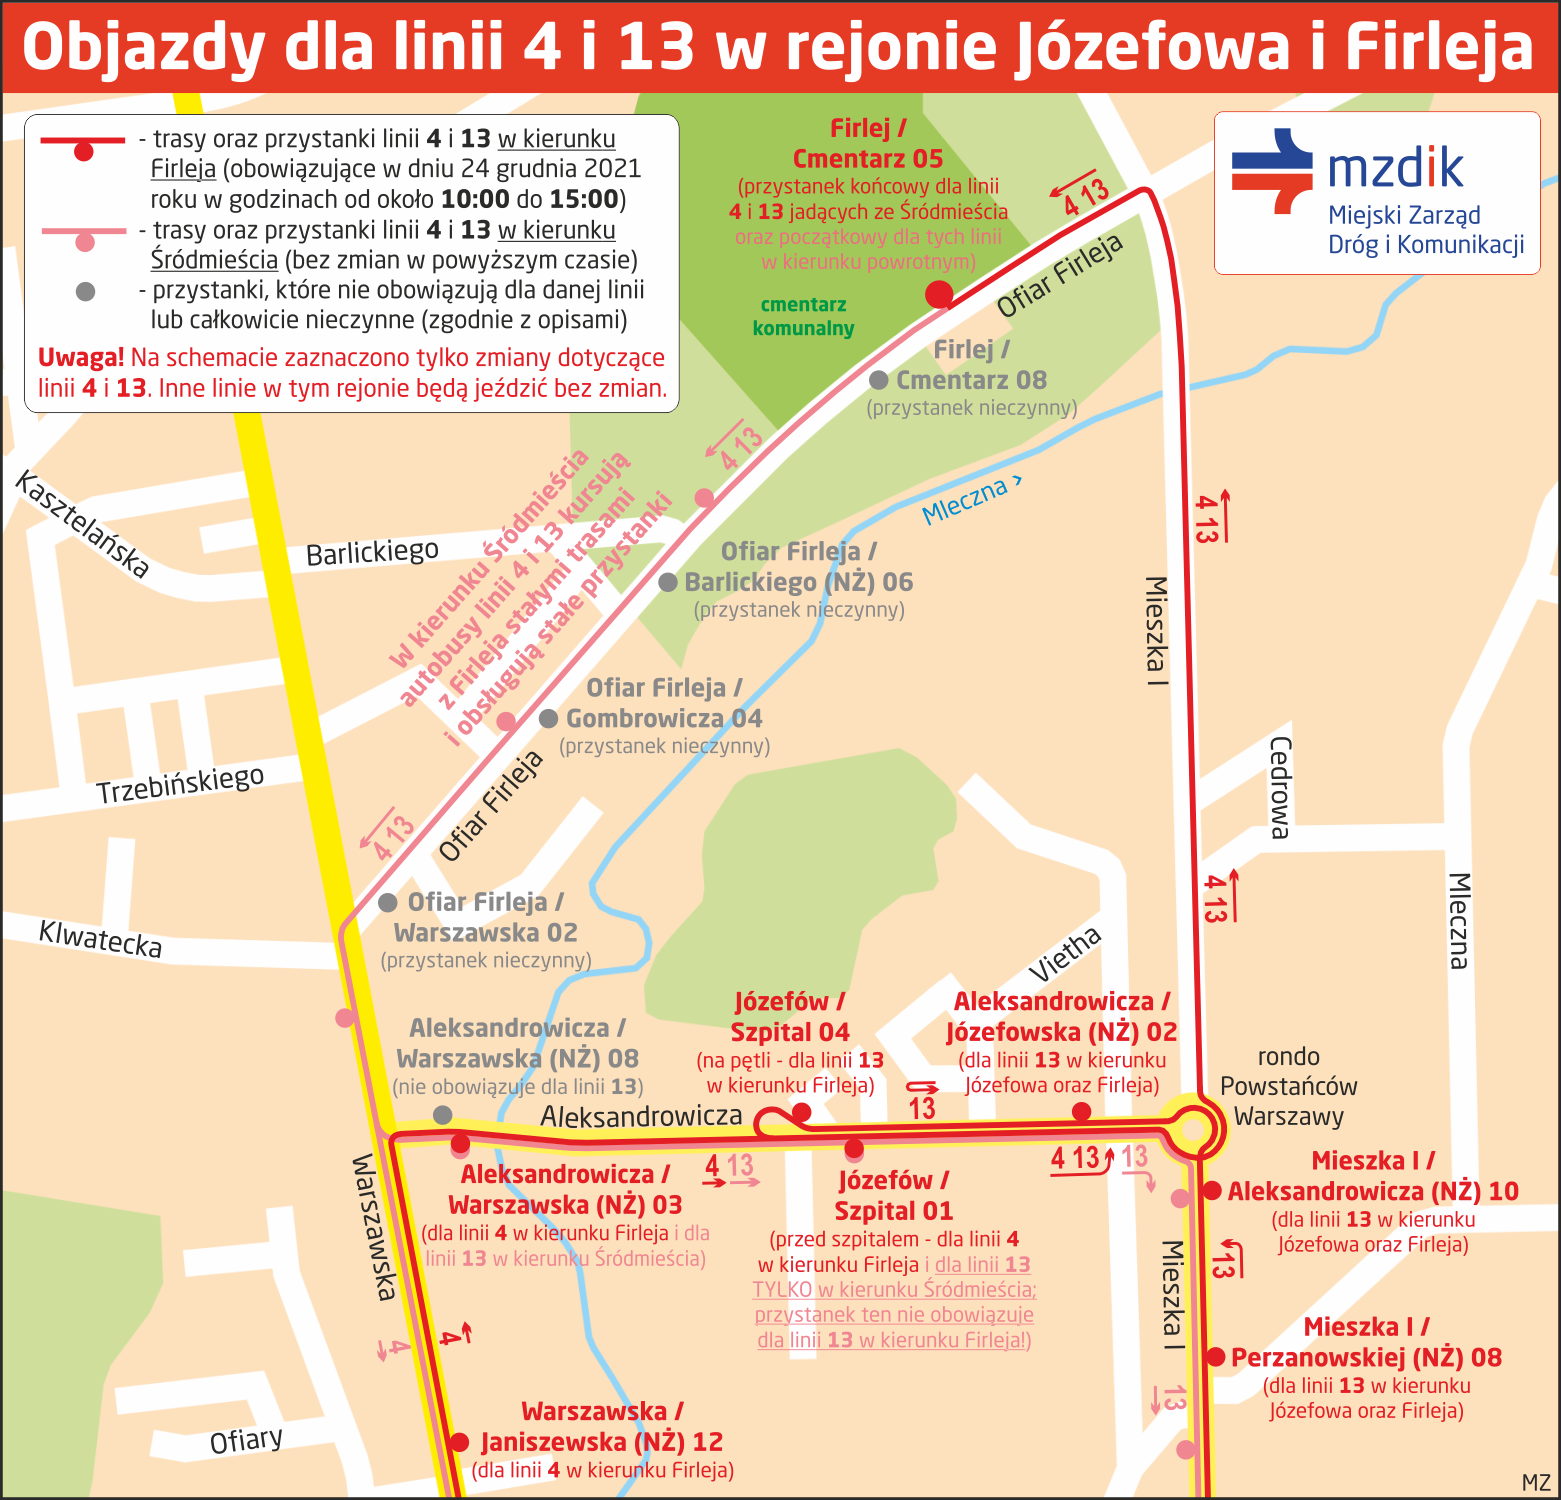 Objazd-Jozefow-Firlej-wig-2021